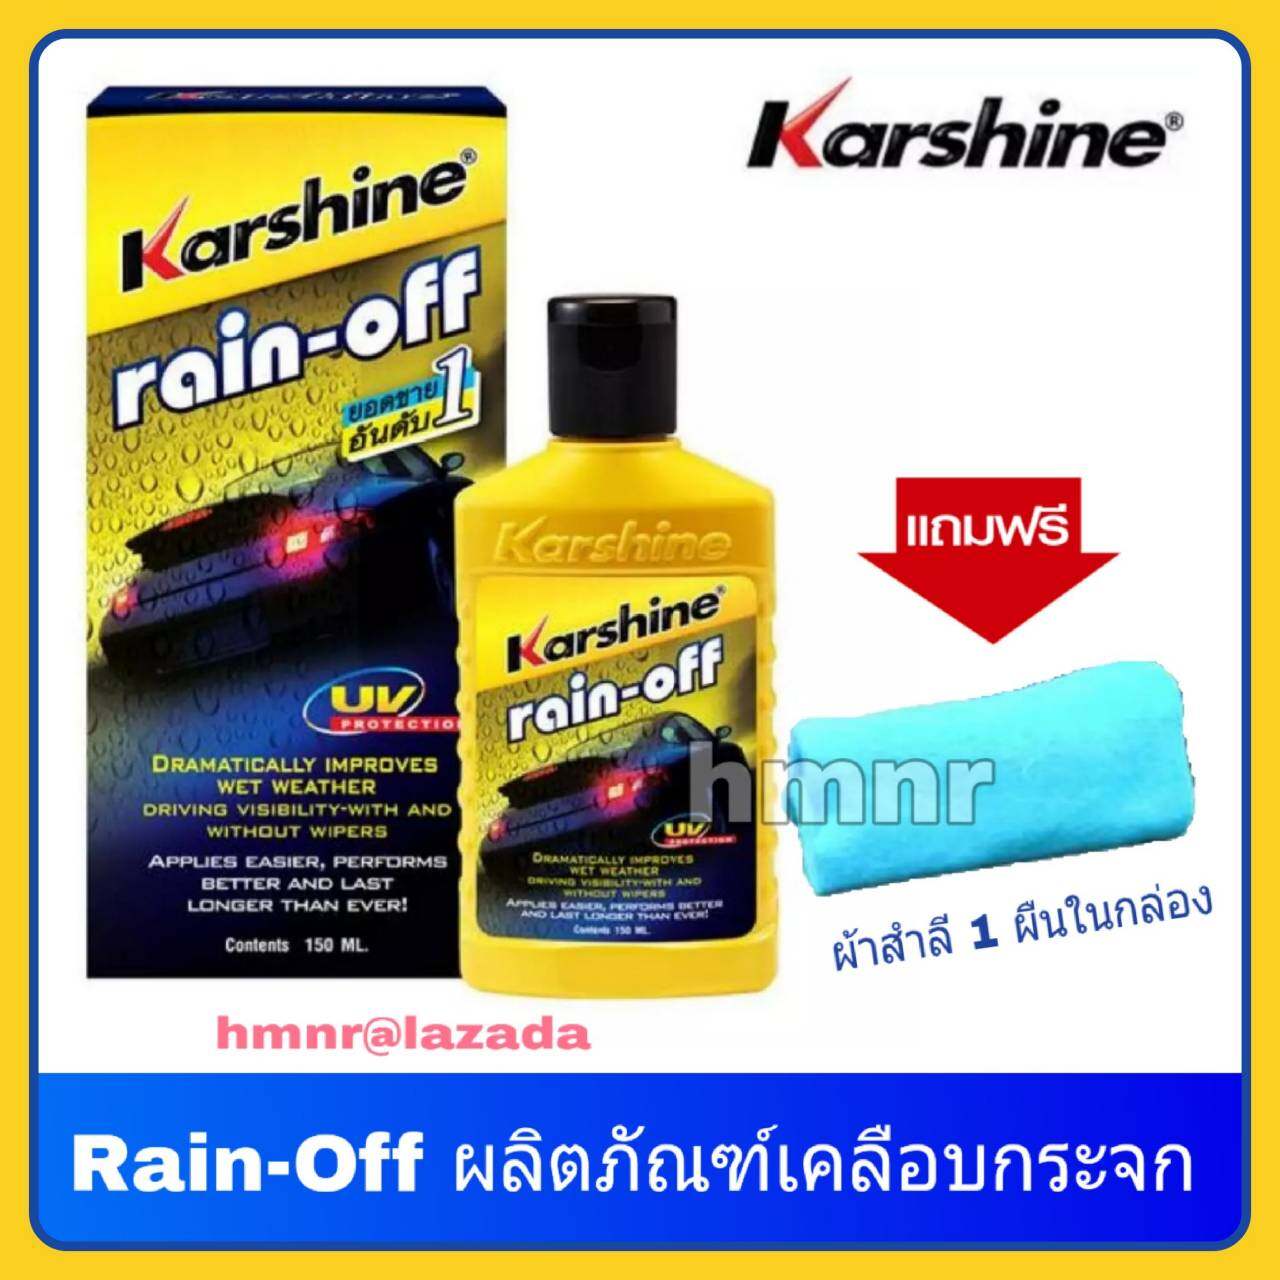 Karshine rain off น้ำยาเคลือบกระจก คาร์ชายน์ เรนออฟ ขนาด 150 มล. แถมฟรีผ้าสำลี 1 ผืนในกล่อง